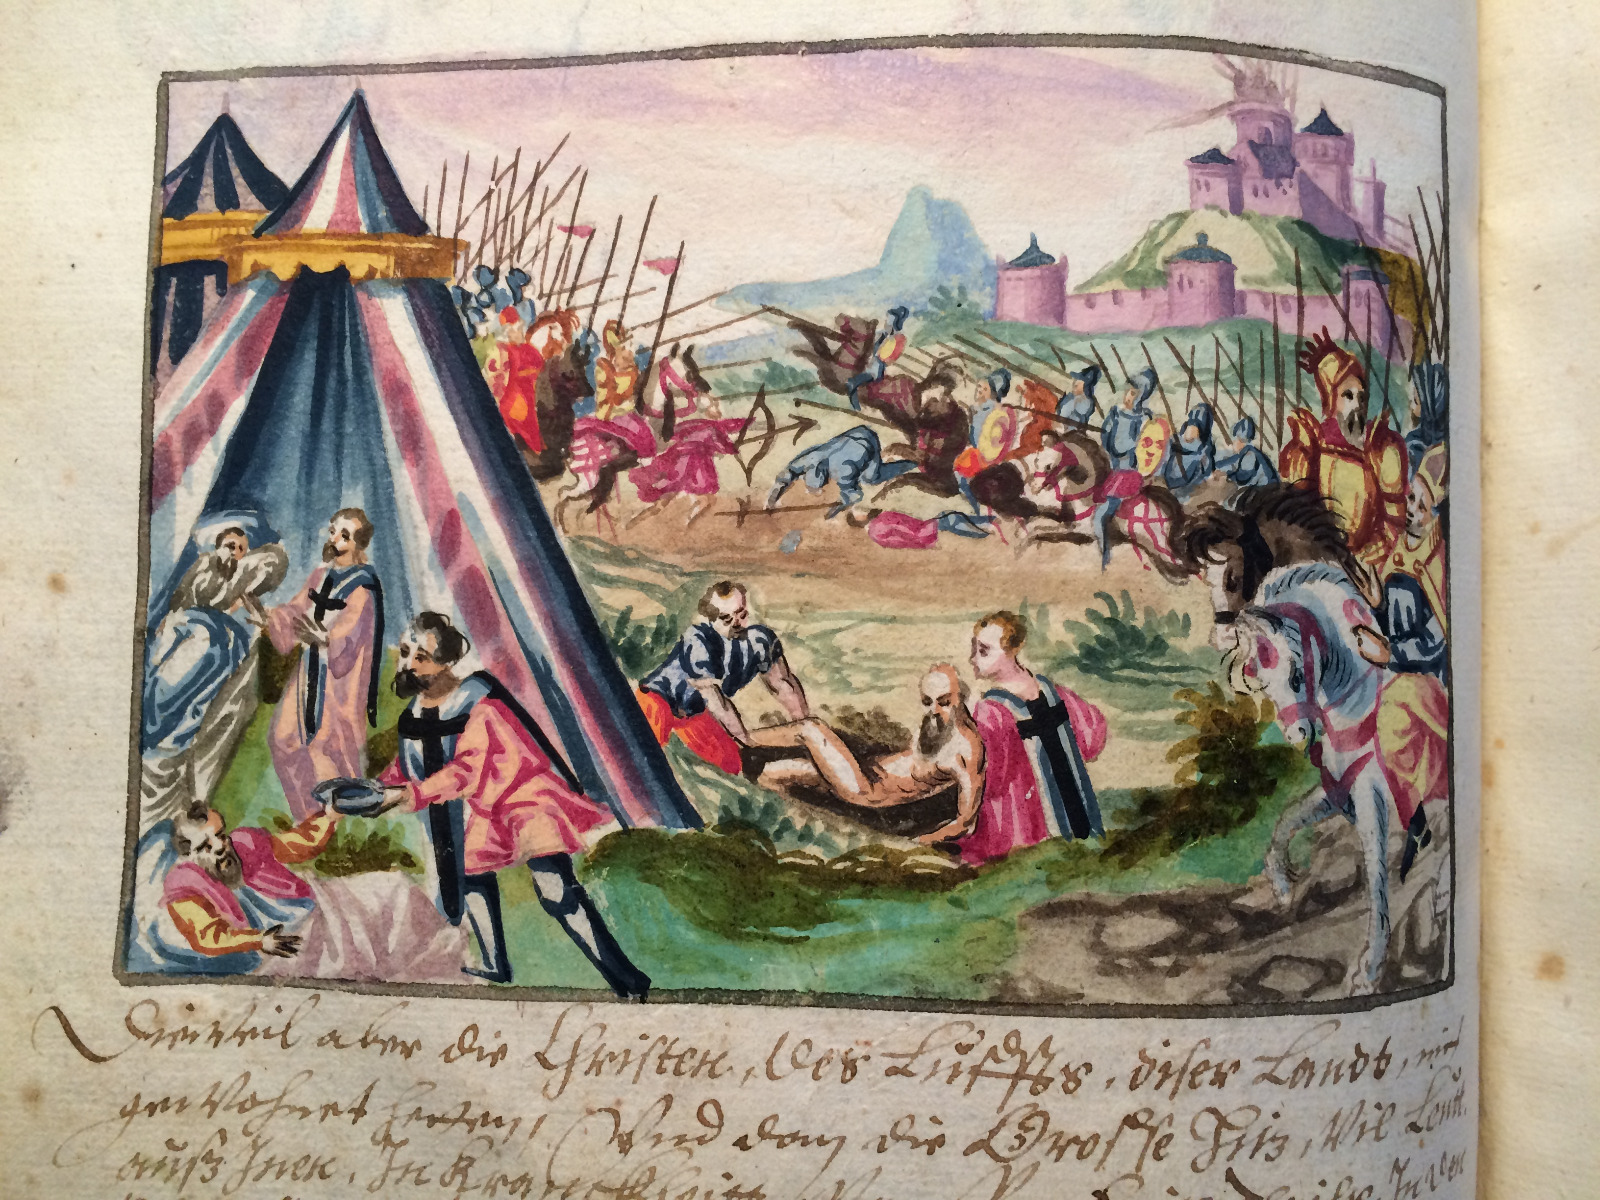 Das Bild zeigt eine kolorierte Abbildung aus der Ganzhorn-Chronik, die in bildlicher Form das Helfen und Heilen sowie den Kranken-und Totendienst darstellt. Im Hintergrund sind neben einer Burg außerdem kämpfende Ritter mit Lanzen und Pferden zu sehen.